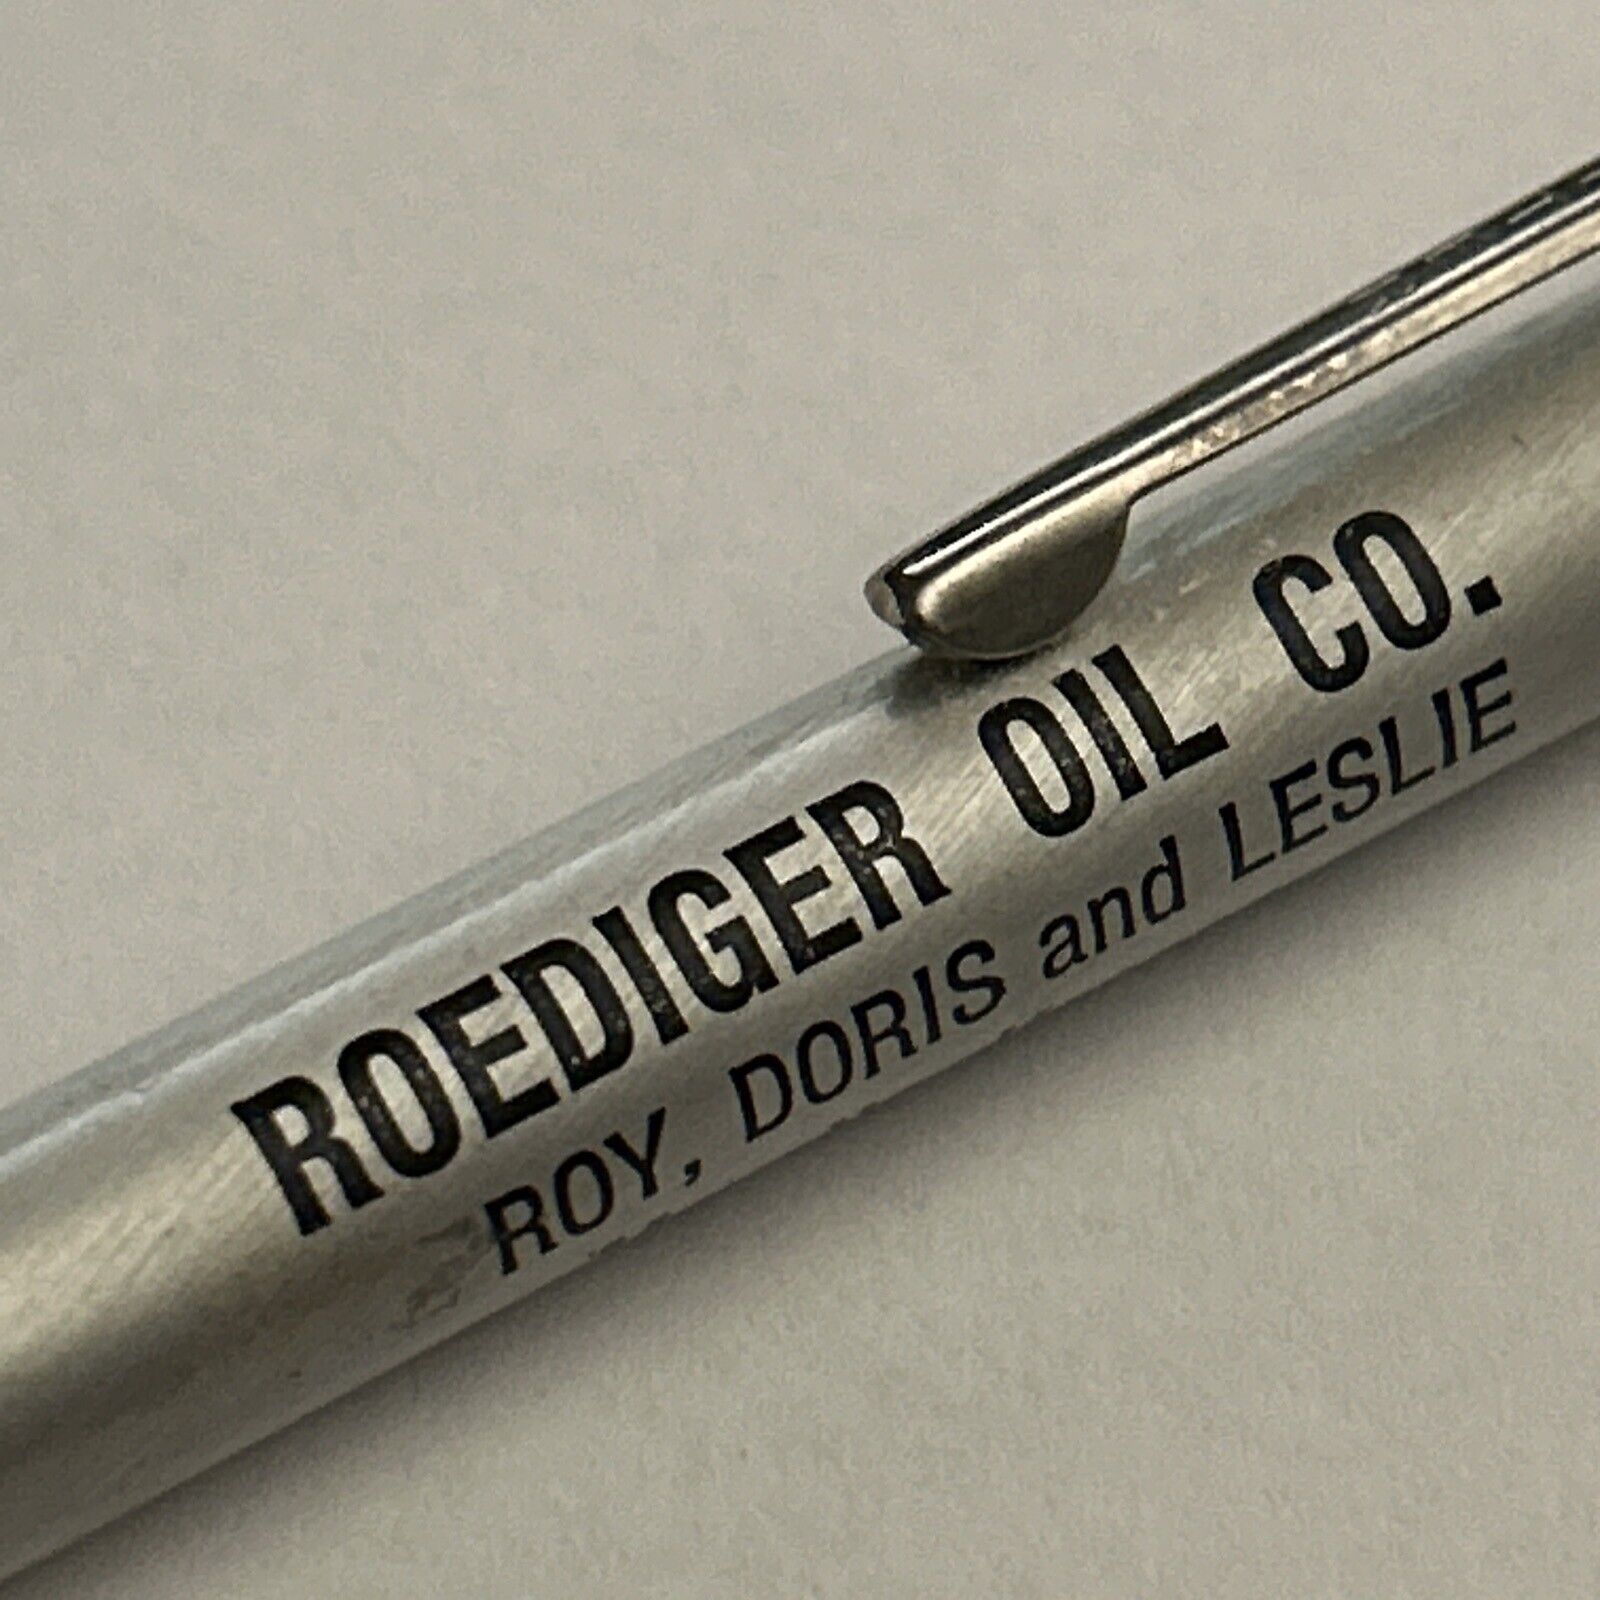 VTG Ballpoint Pen Roediger Oil Co. Roy Doris Leslie Mayetta Kansas